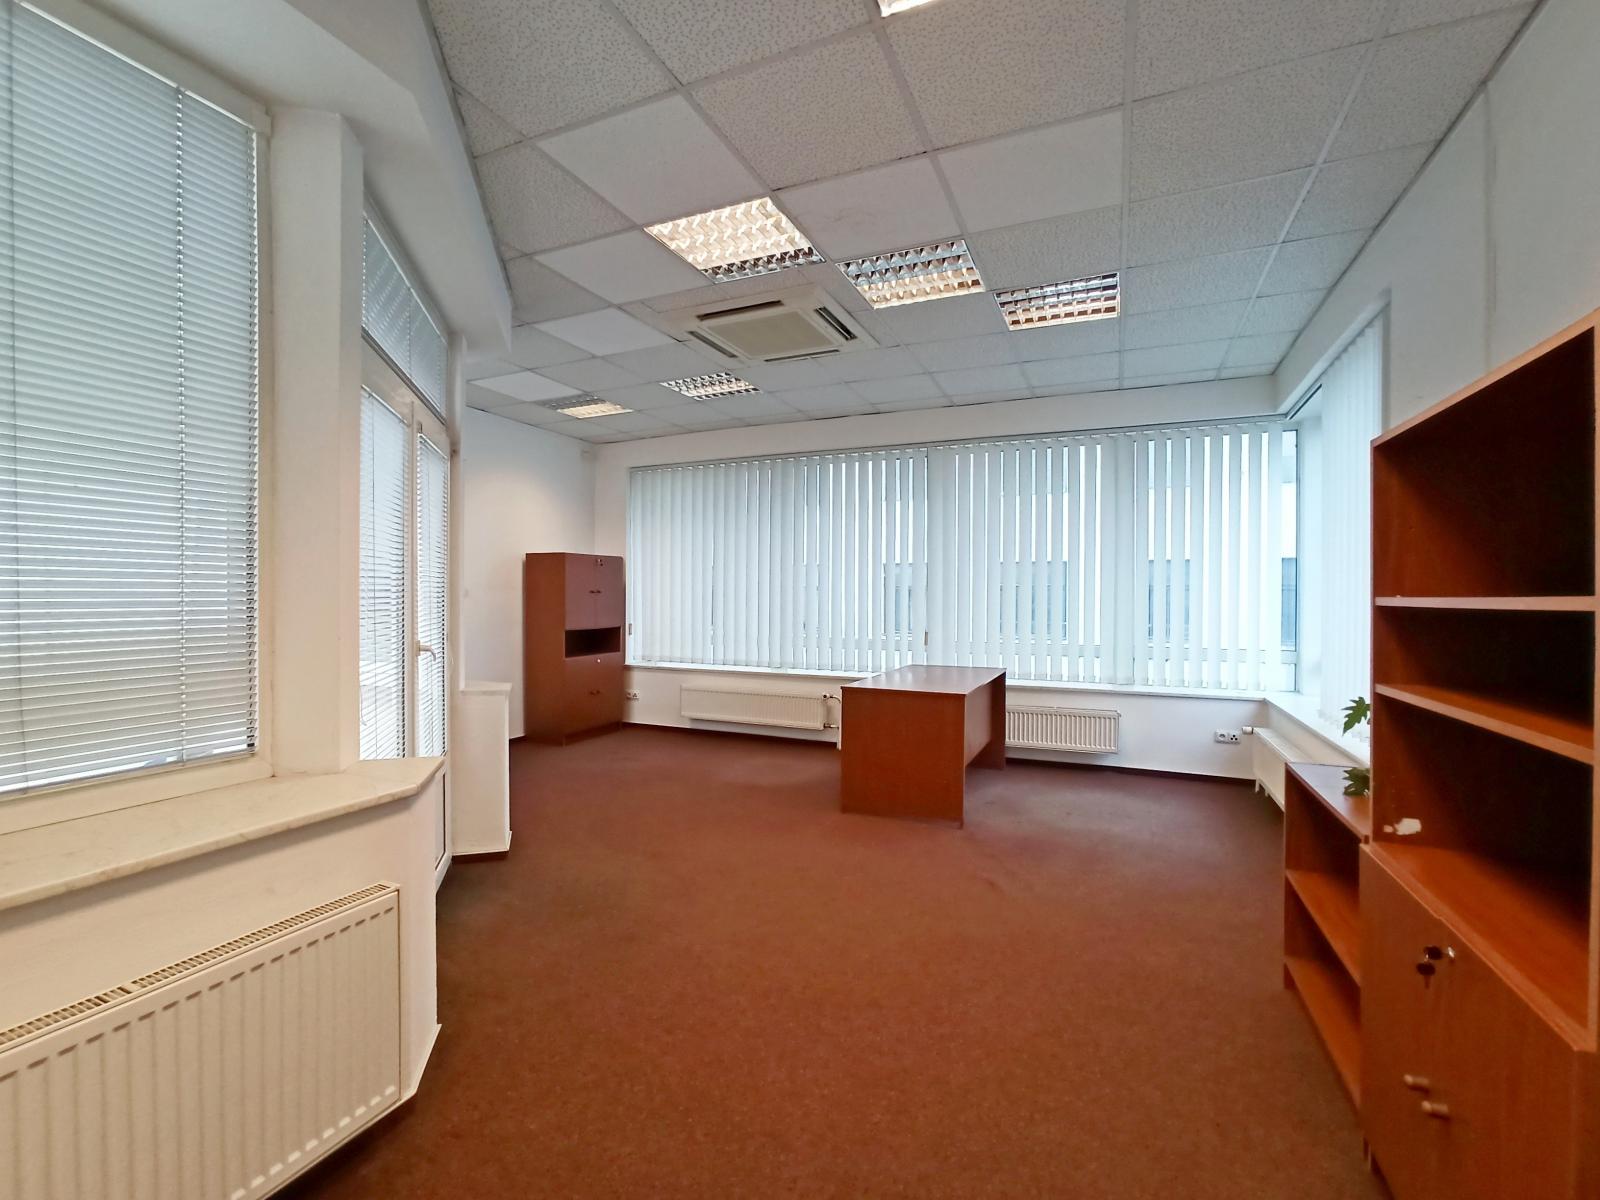 Pronájem kanceláře, Brno - střed, ul. Špitálka, výloha, balkon, parkování zdarma, obrázek č. 1